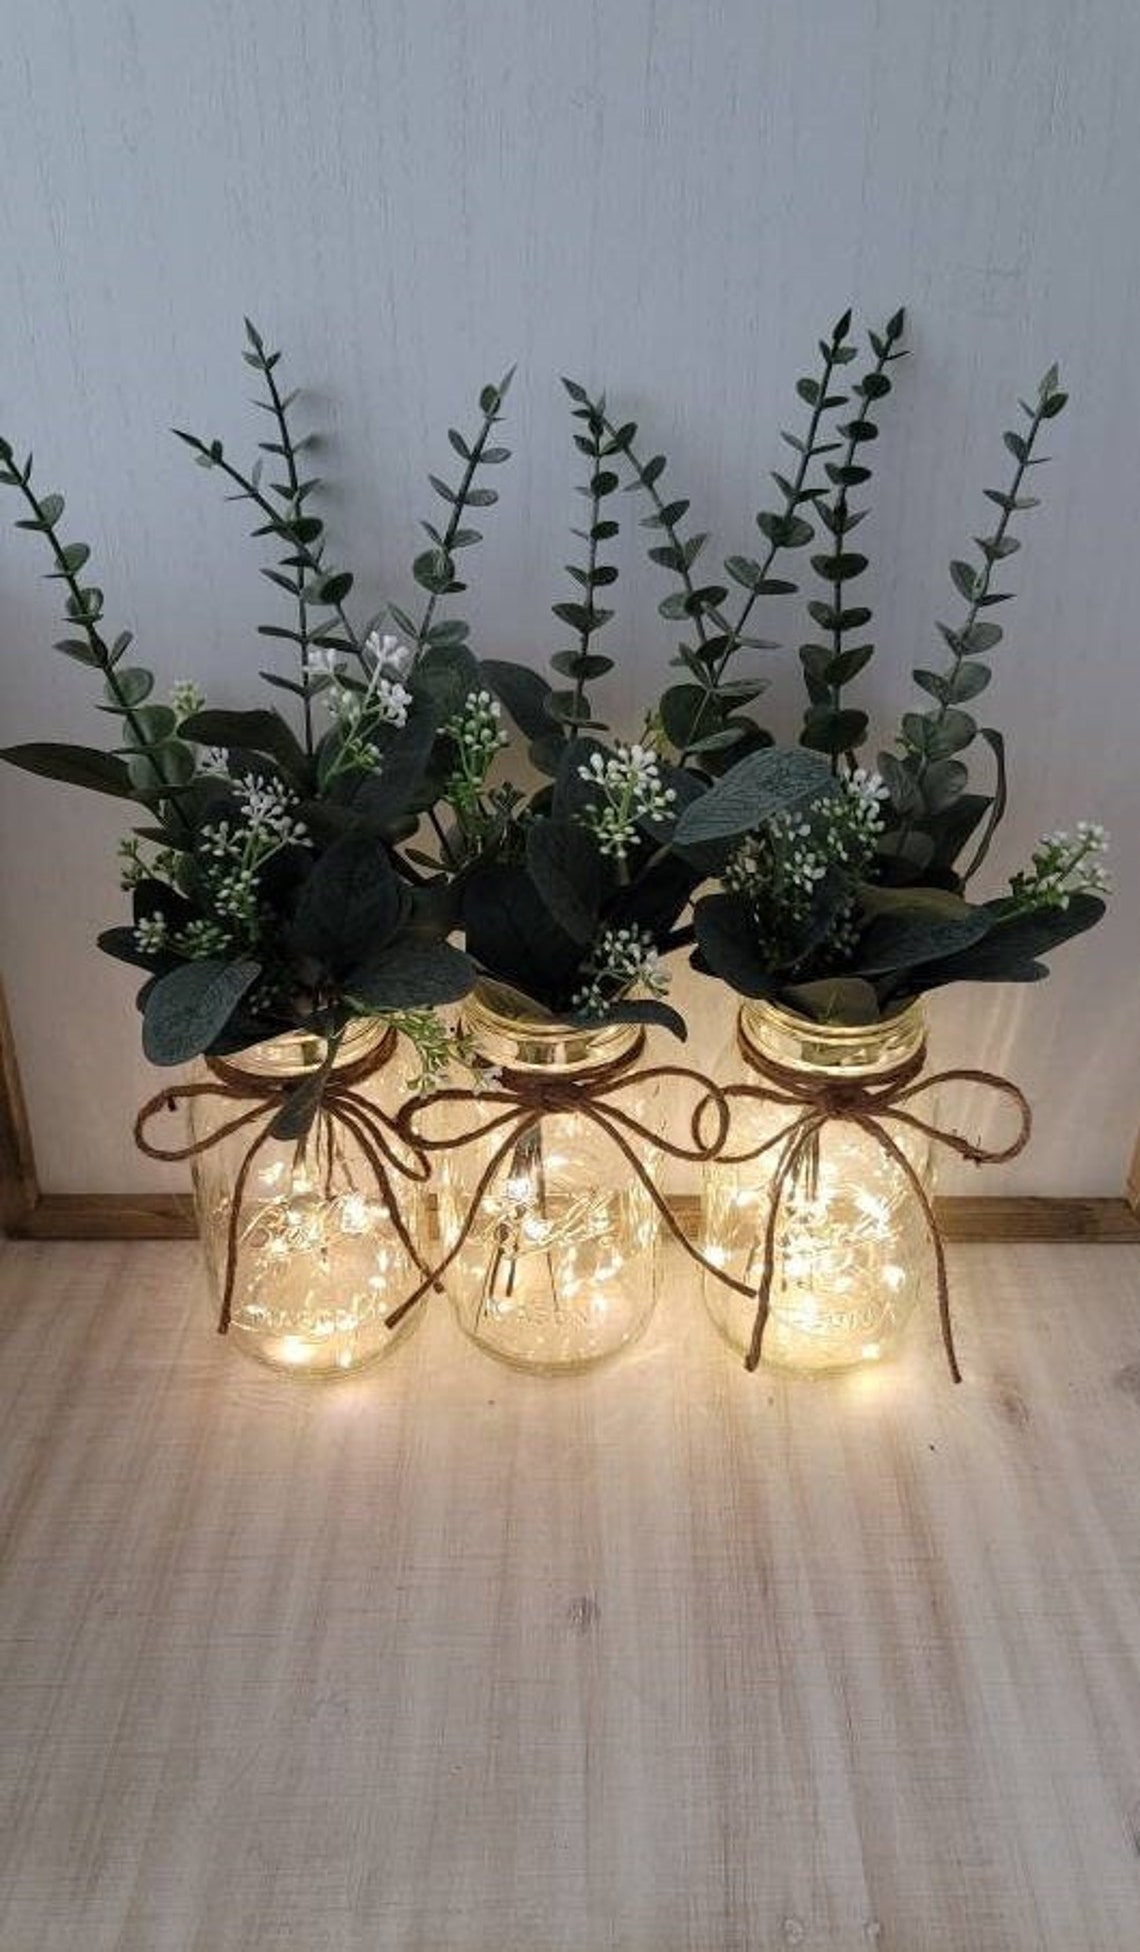 Barattoli natalizi con luci e piante decorative.